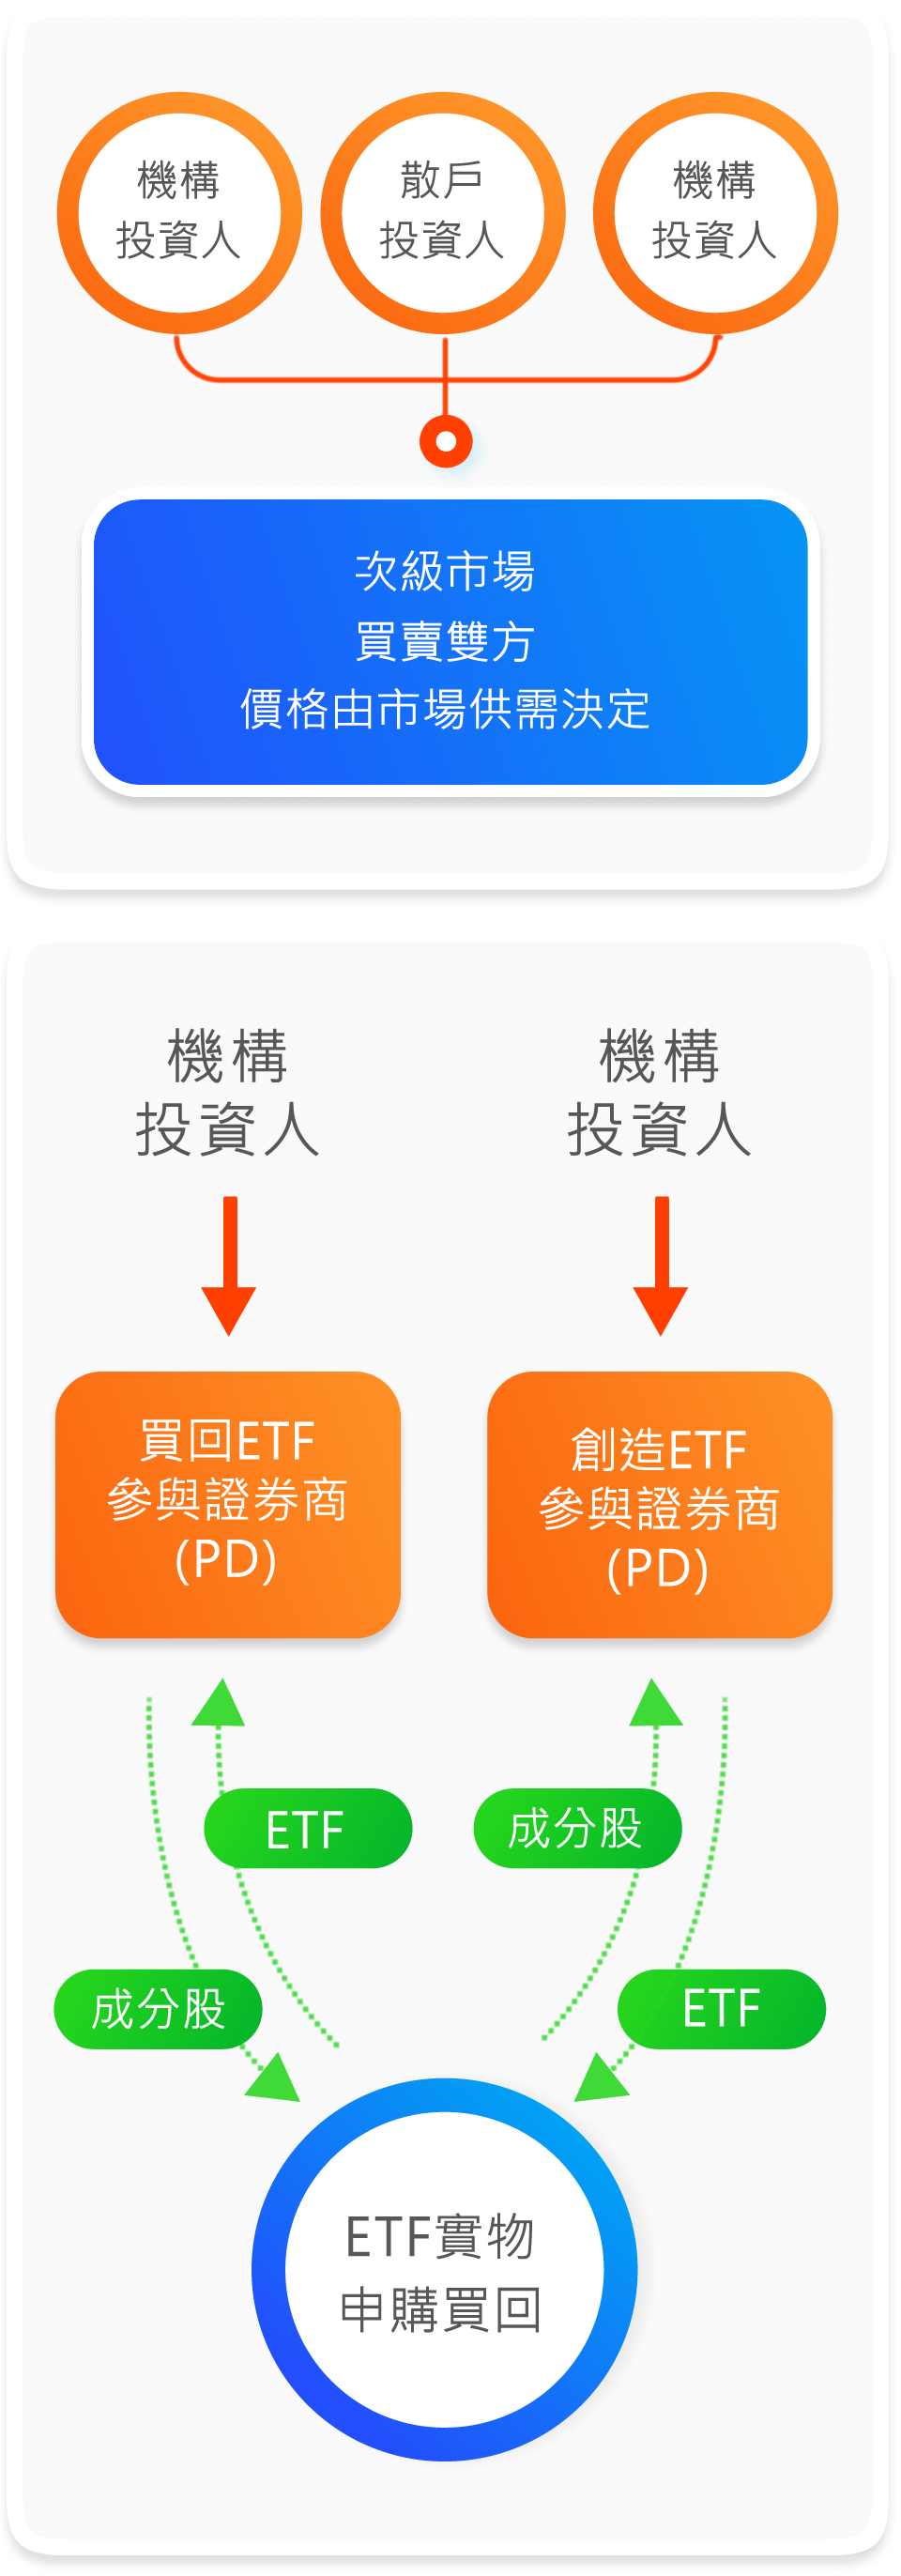 ETF 初級及次級市場買賣交易流程圖